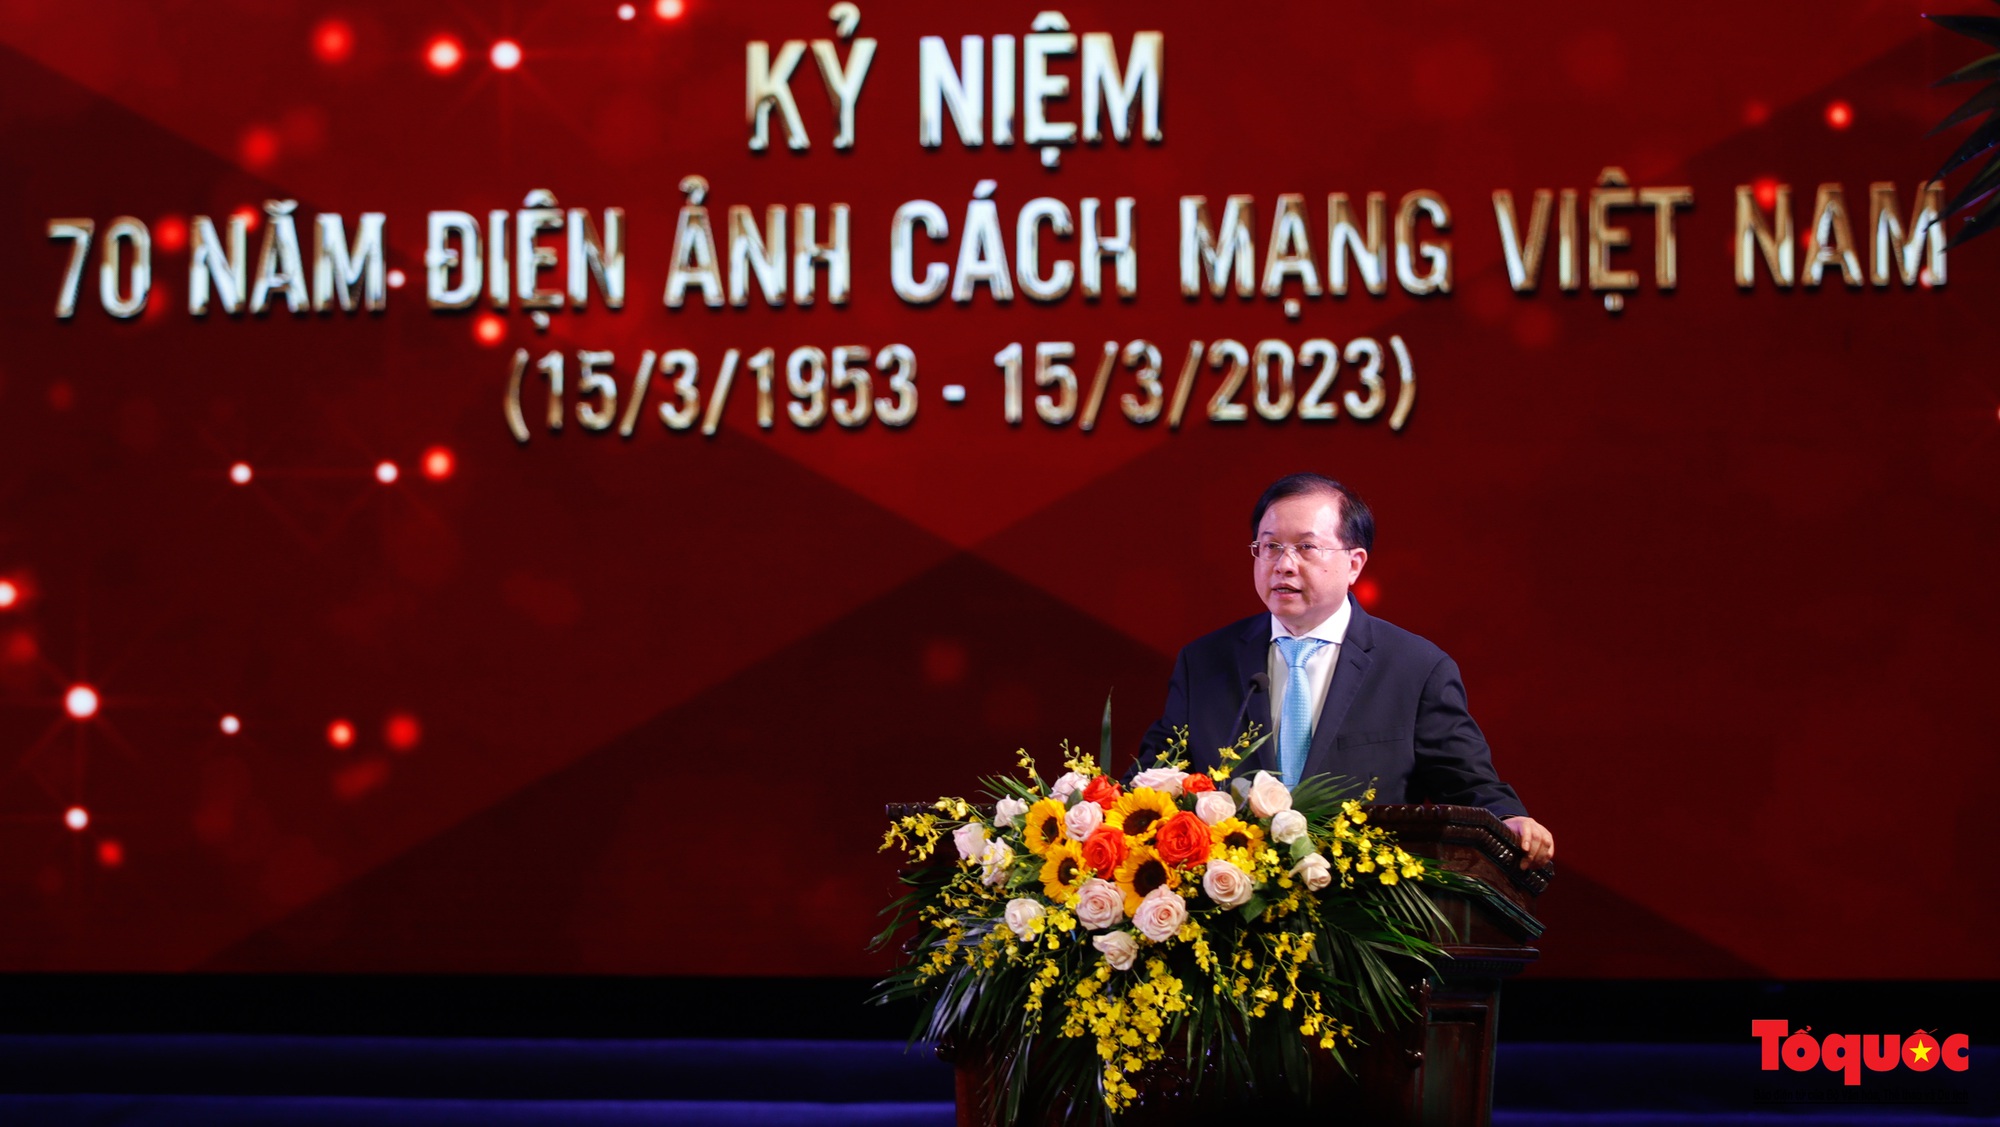 Kỷ niệm 70 năm điện ảnh cách mạng Việt Nam - Ảnh 4.